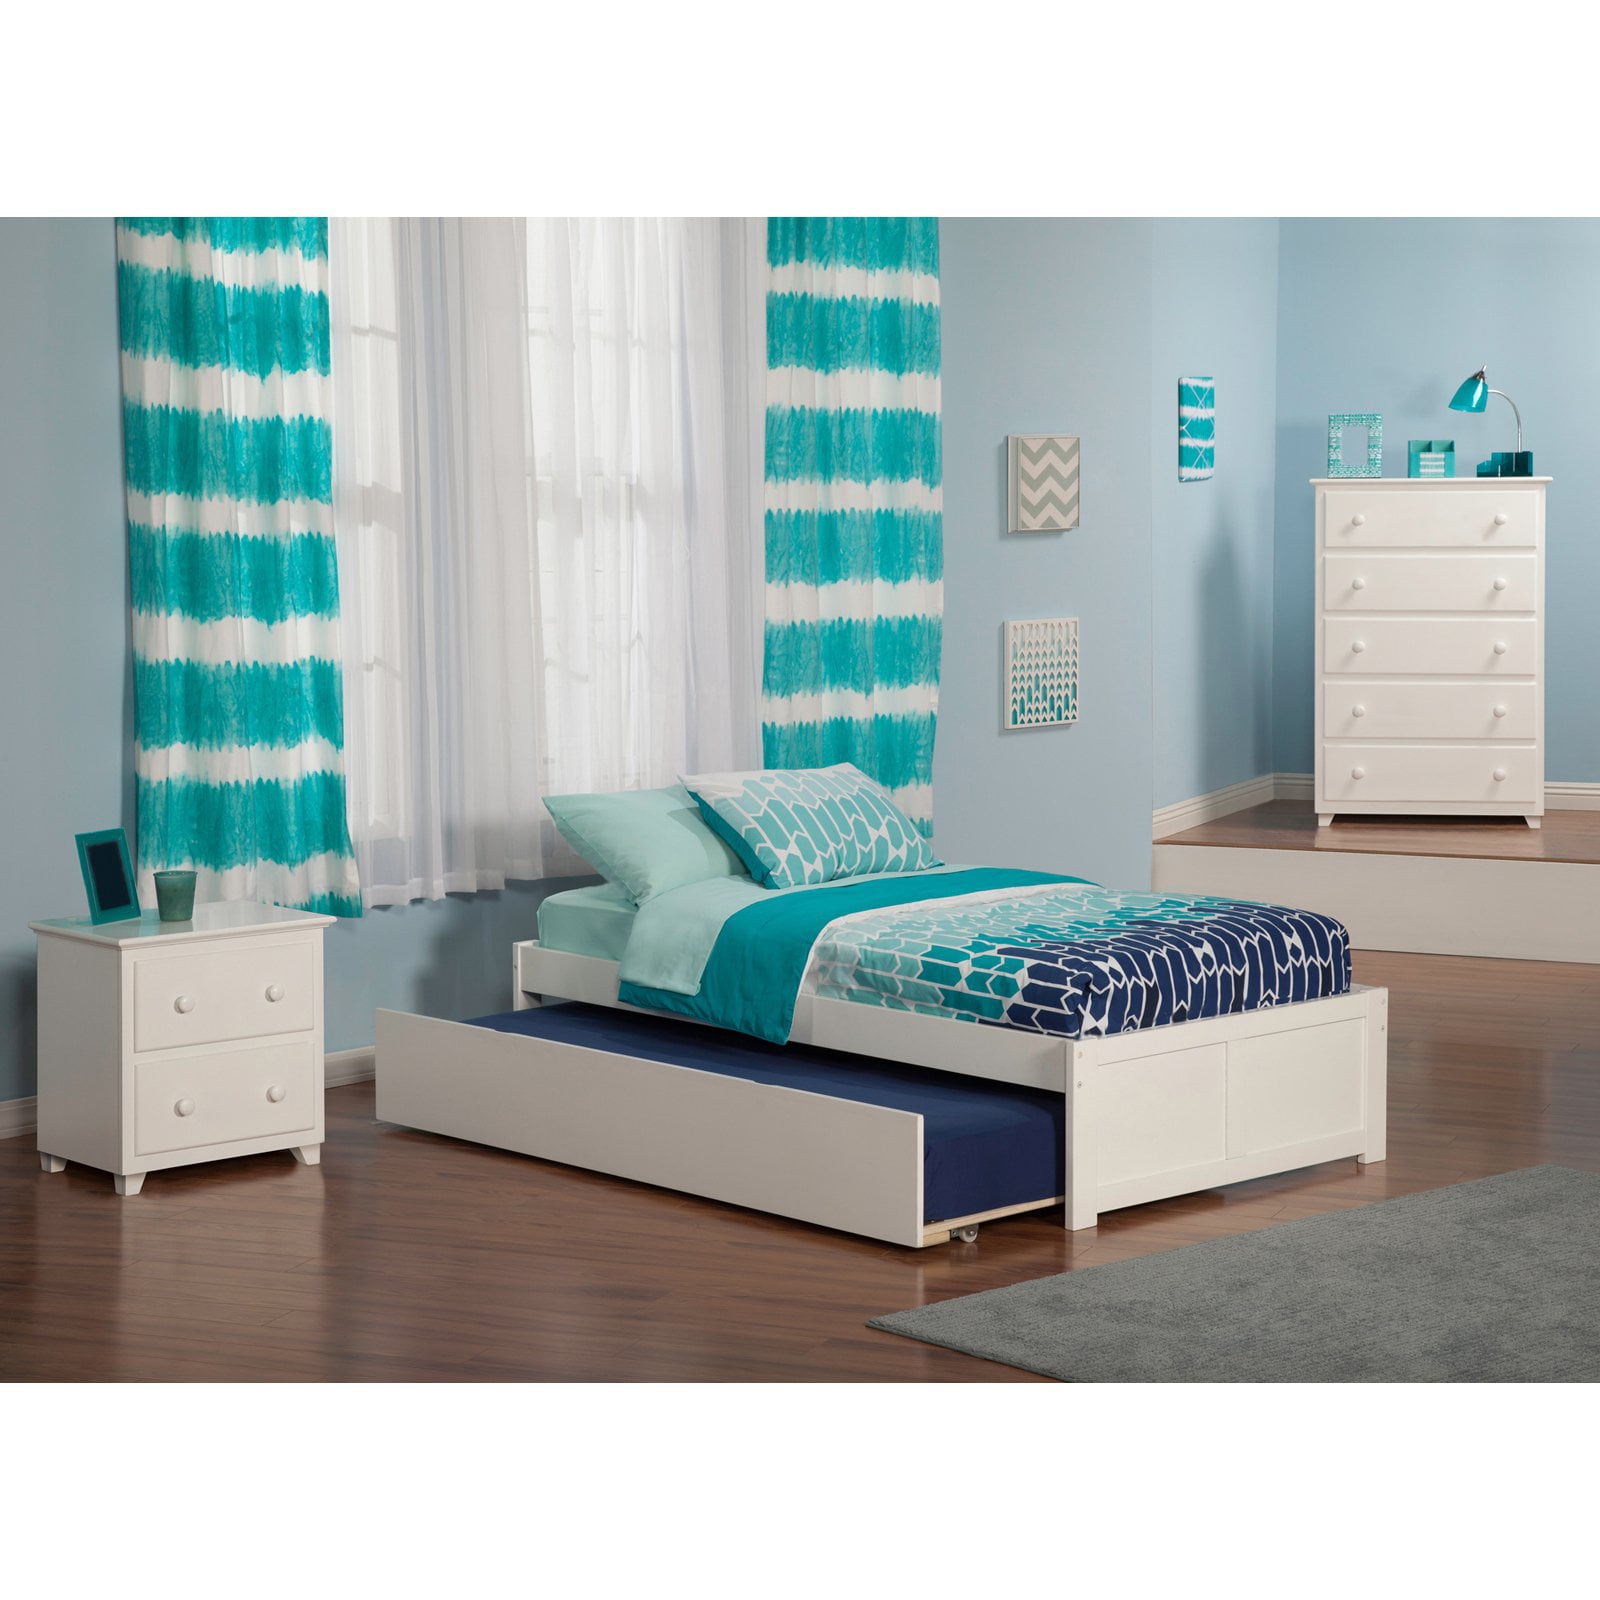 Atlantic Furniture Concord Bedroom Set - Walmart.com ...